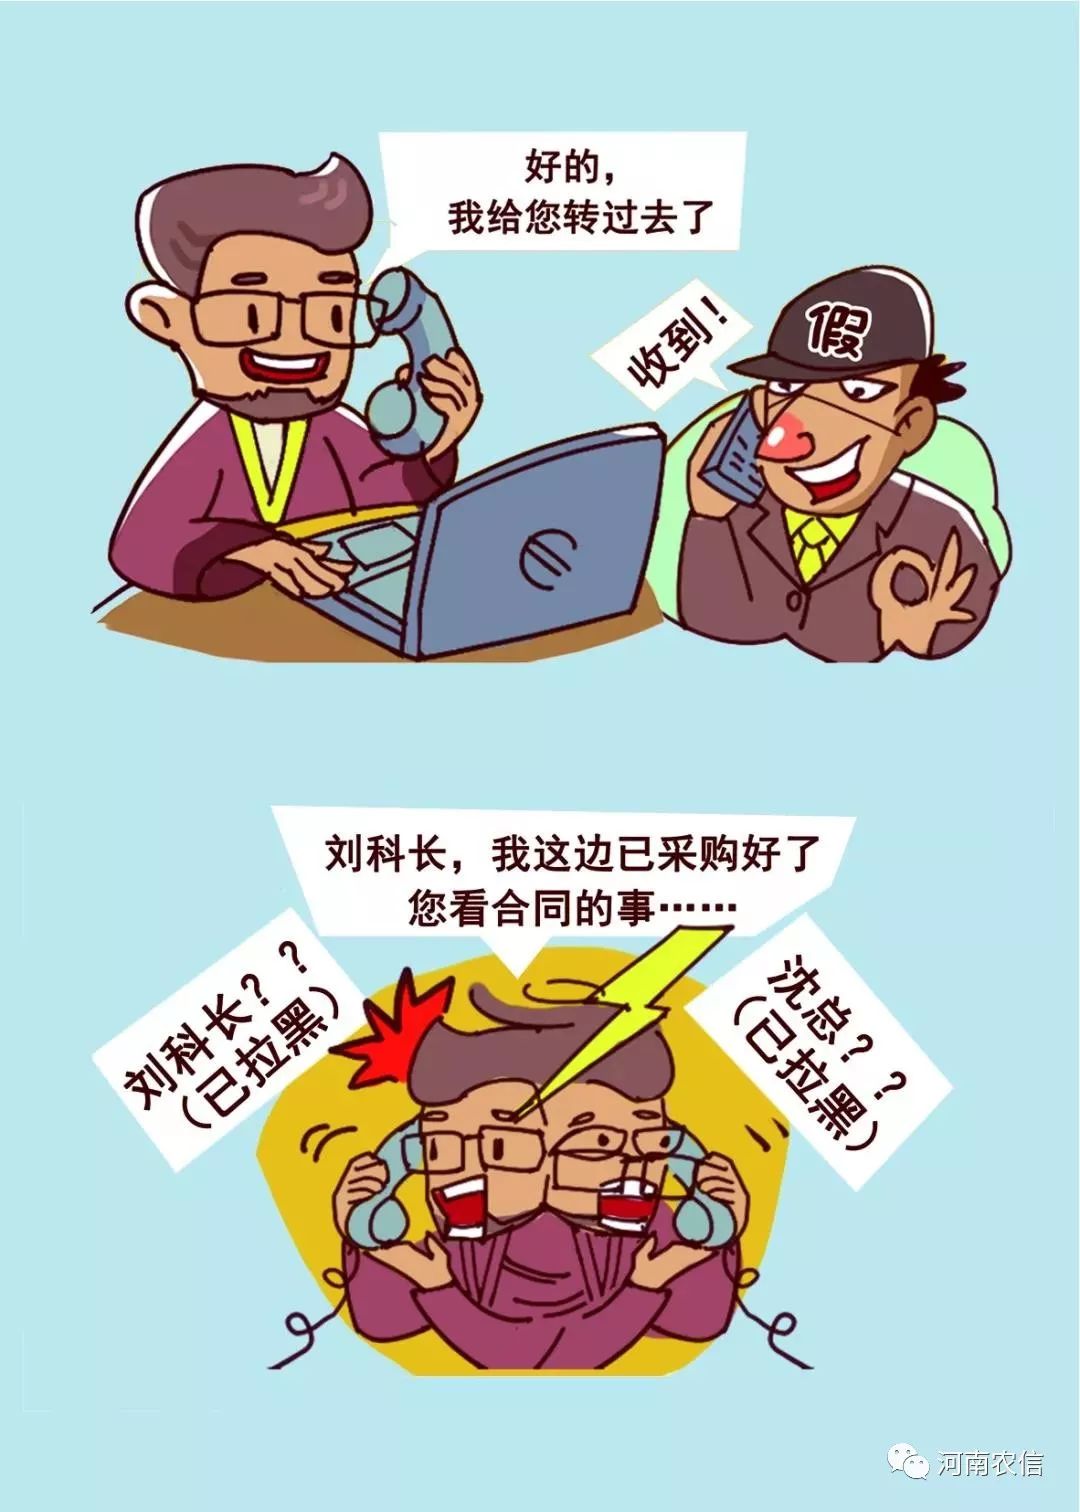 防电信网络诈骗系列宣传漫画6冒充军警购物诈骗